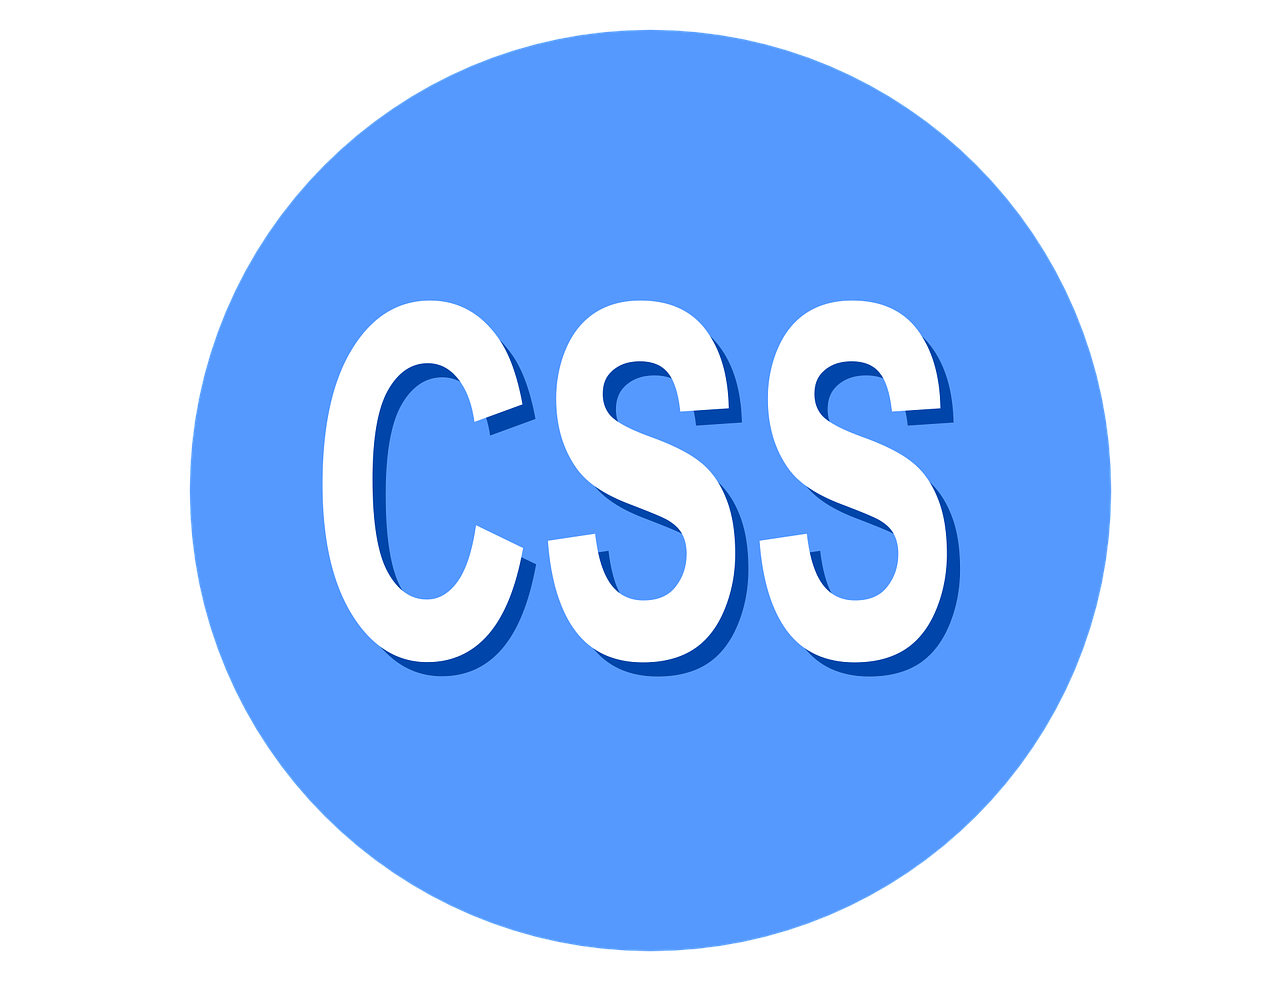 C image source. Значок CSS. CSS логотип. Значок CSS PNG. Язык CSS.